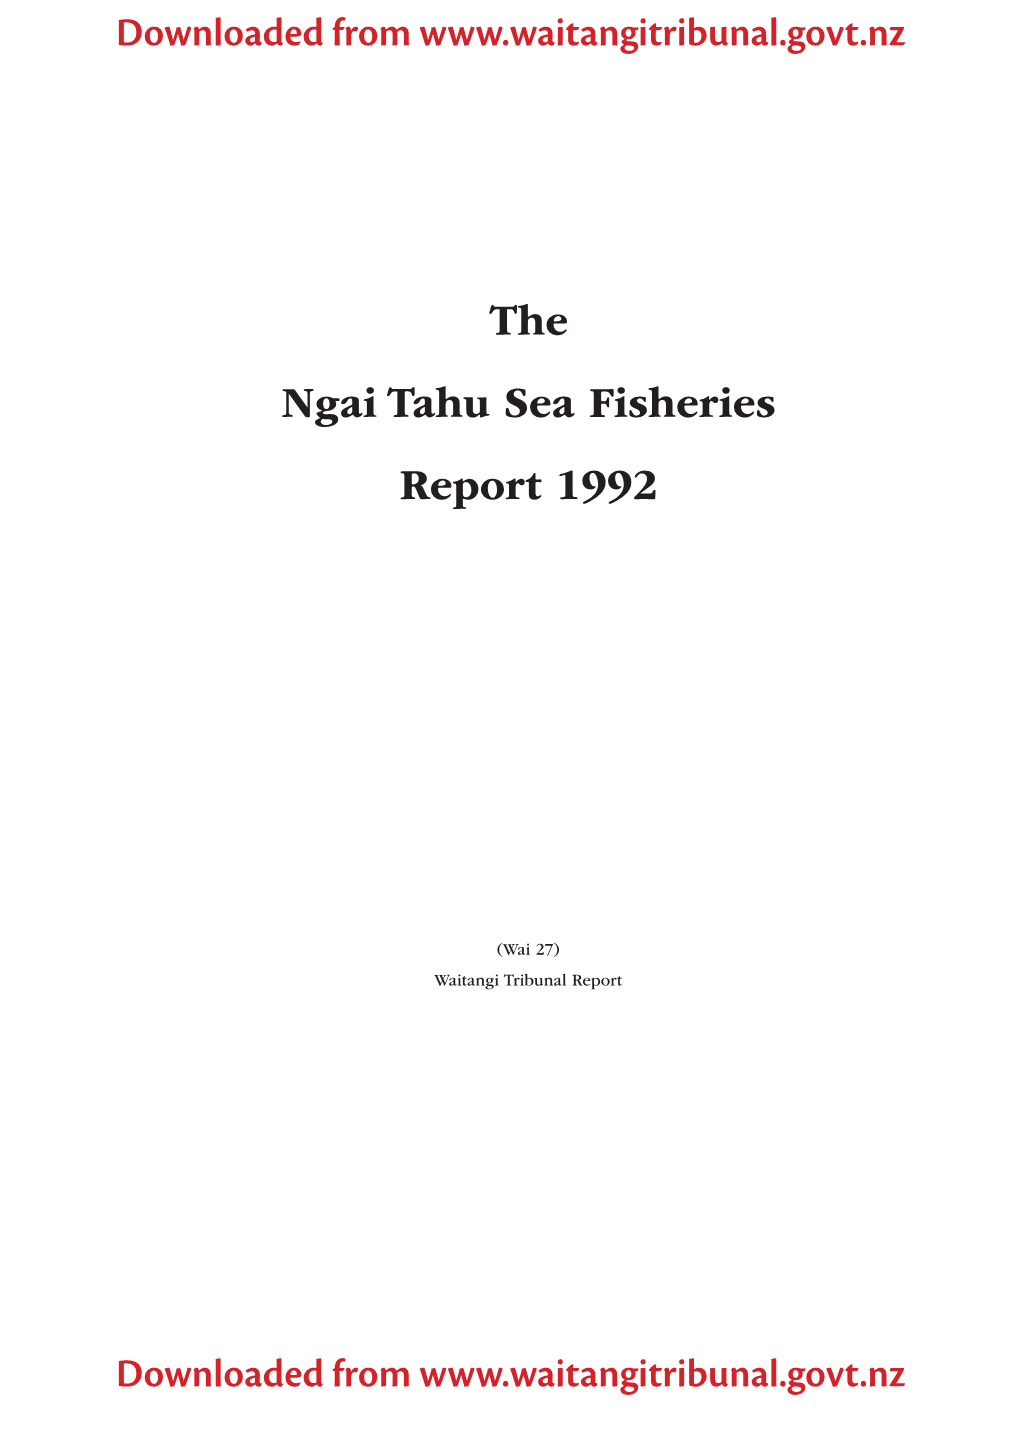 The Ngai Tahu Sea Fisheries Report1992